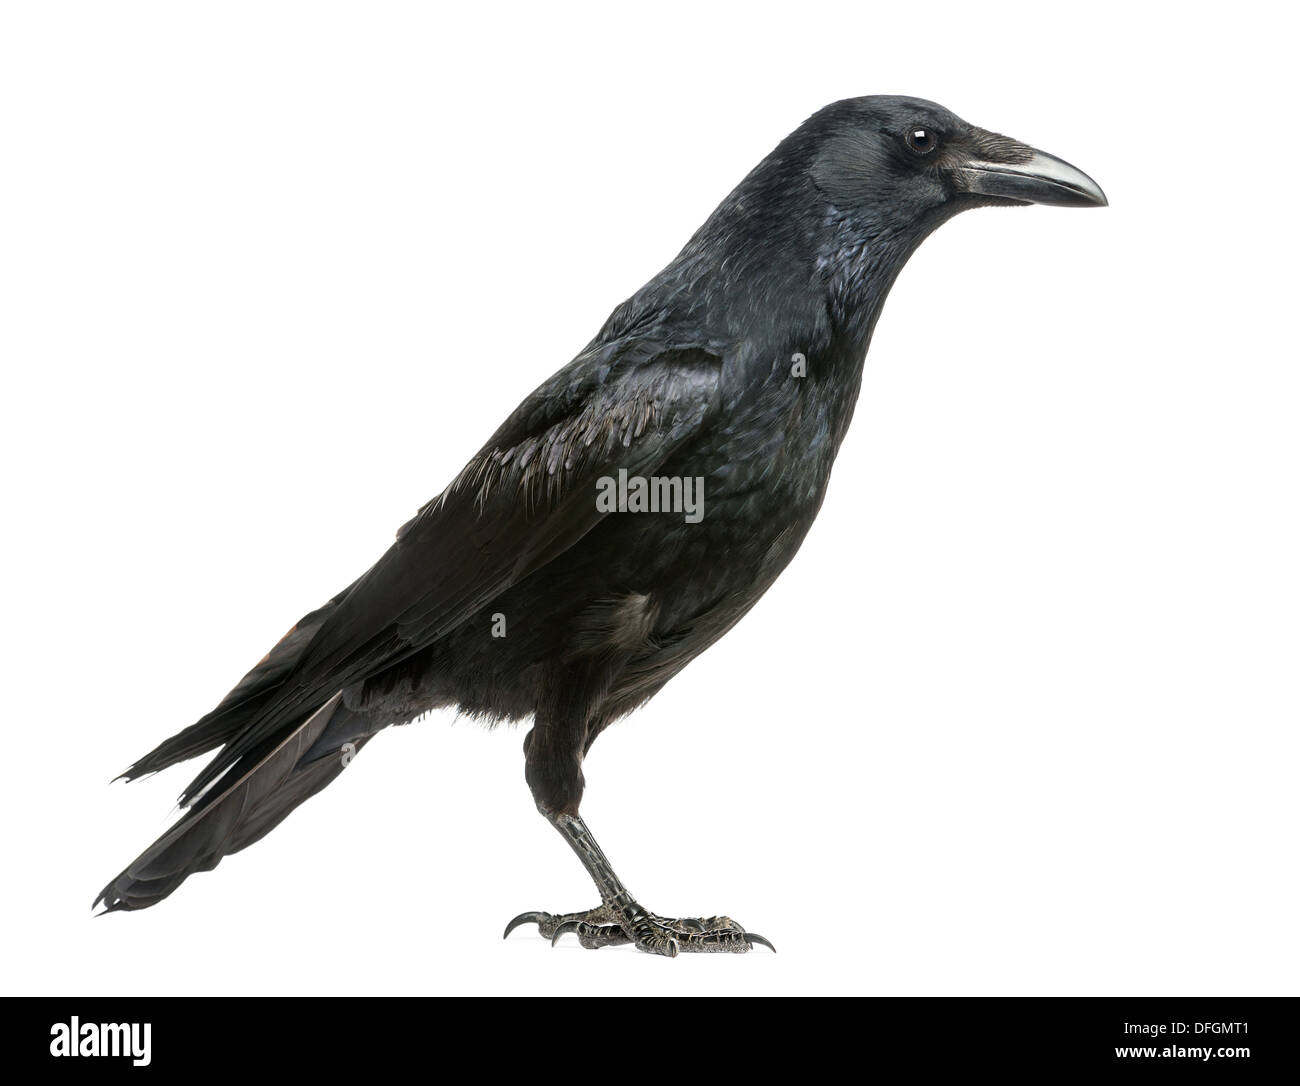 Vista lateral de un Carrion Crow, Corvus corone, contra el fondo blanco. Foto de stock